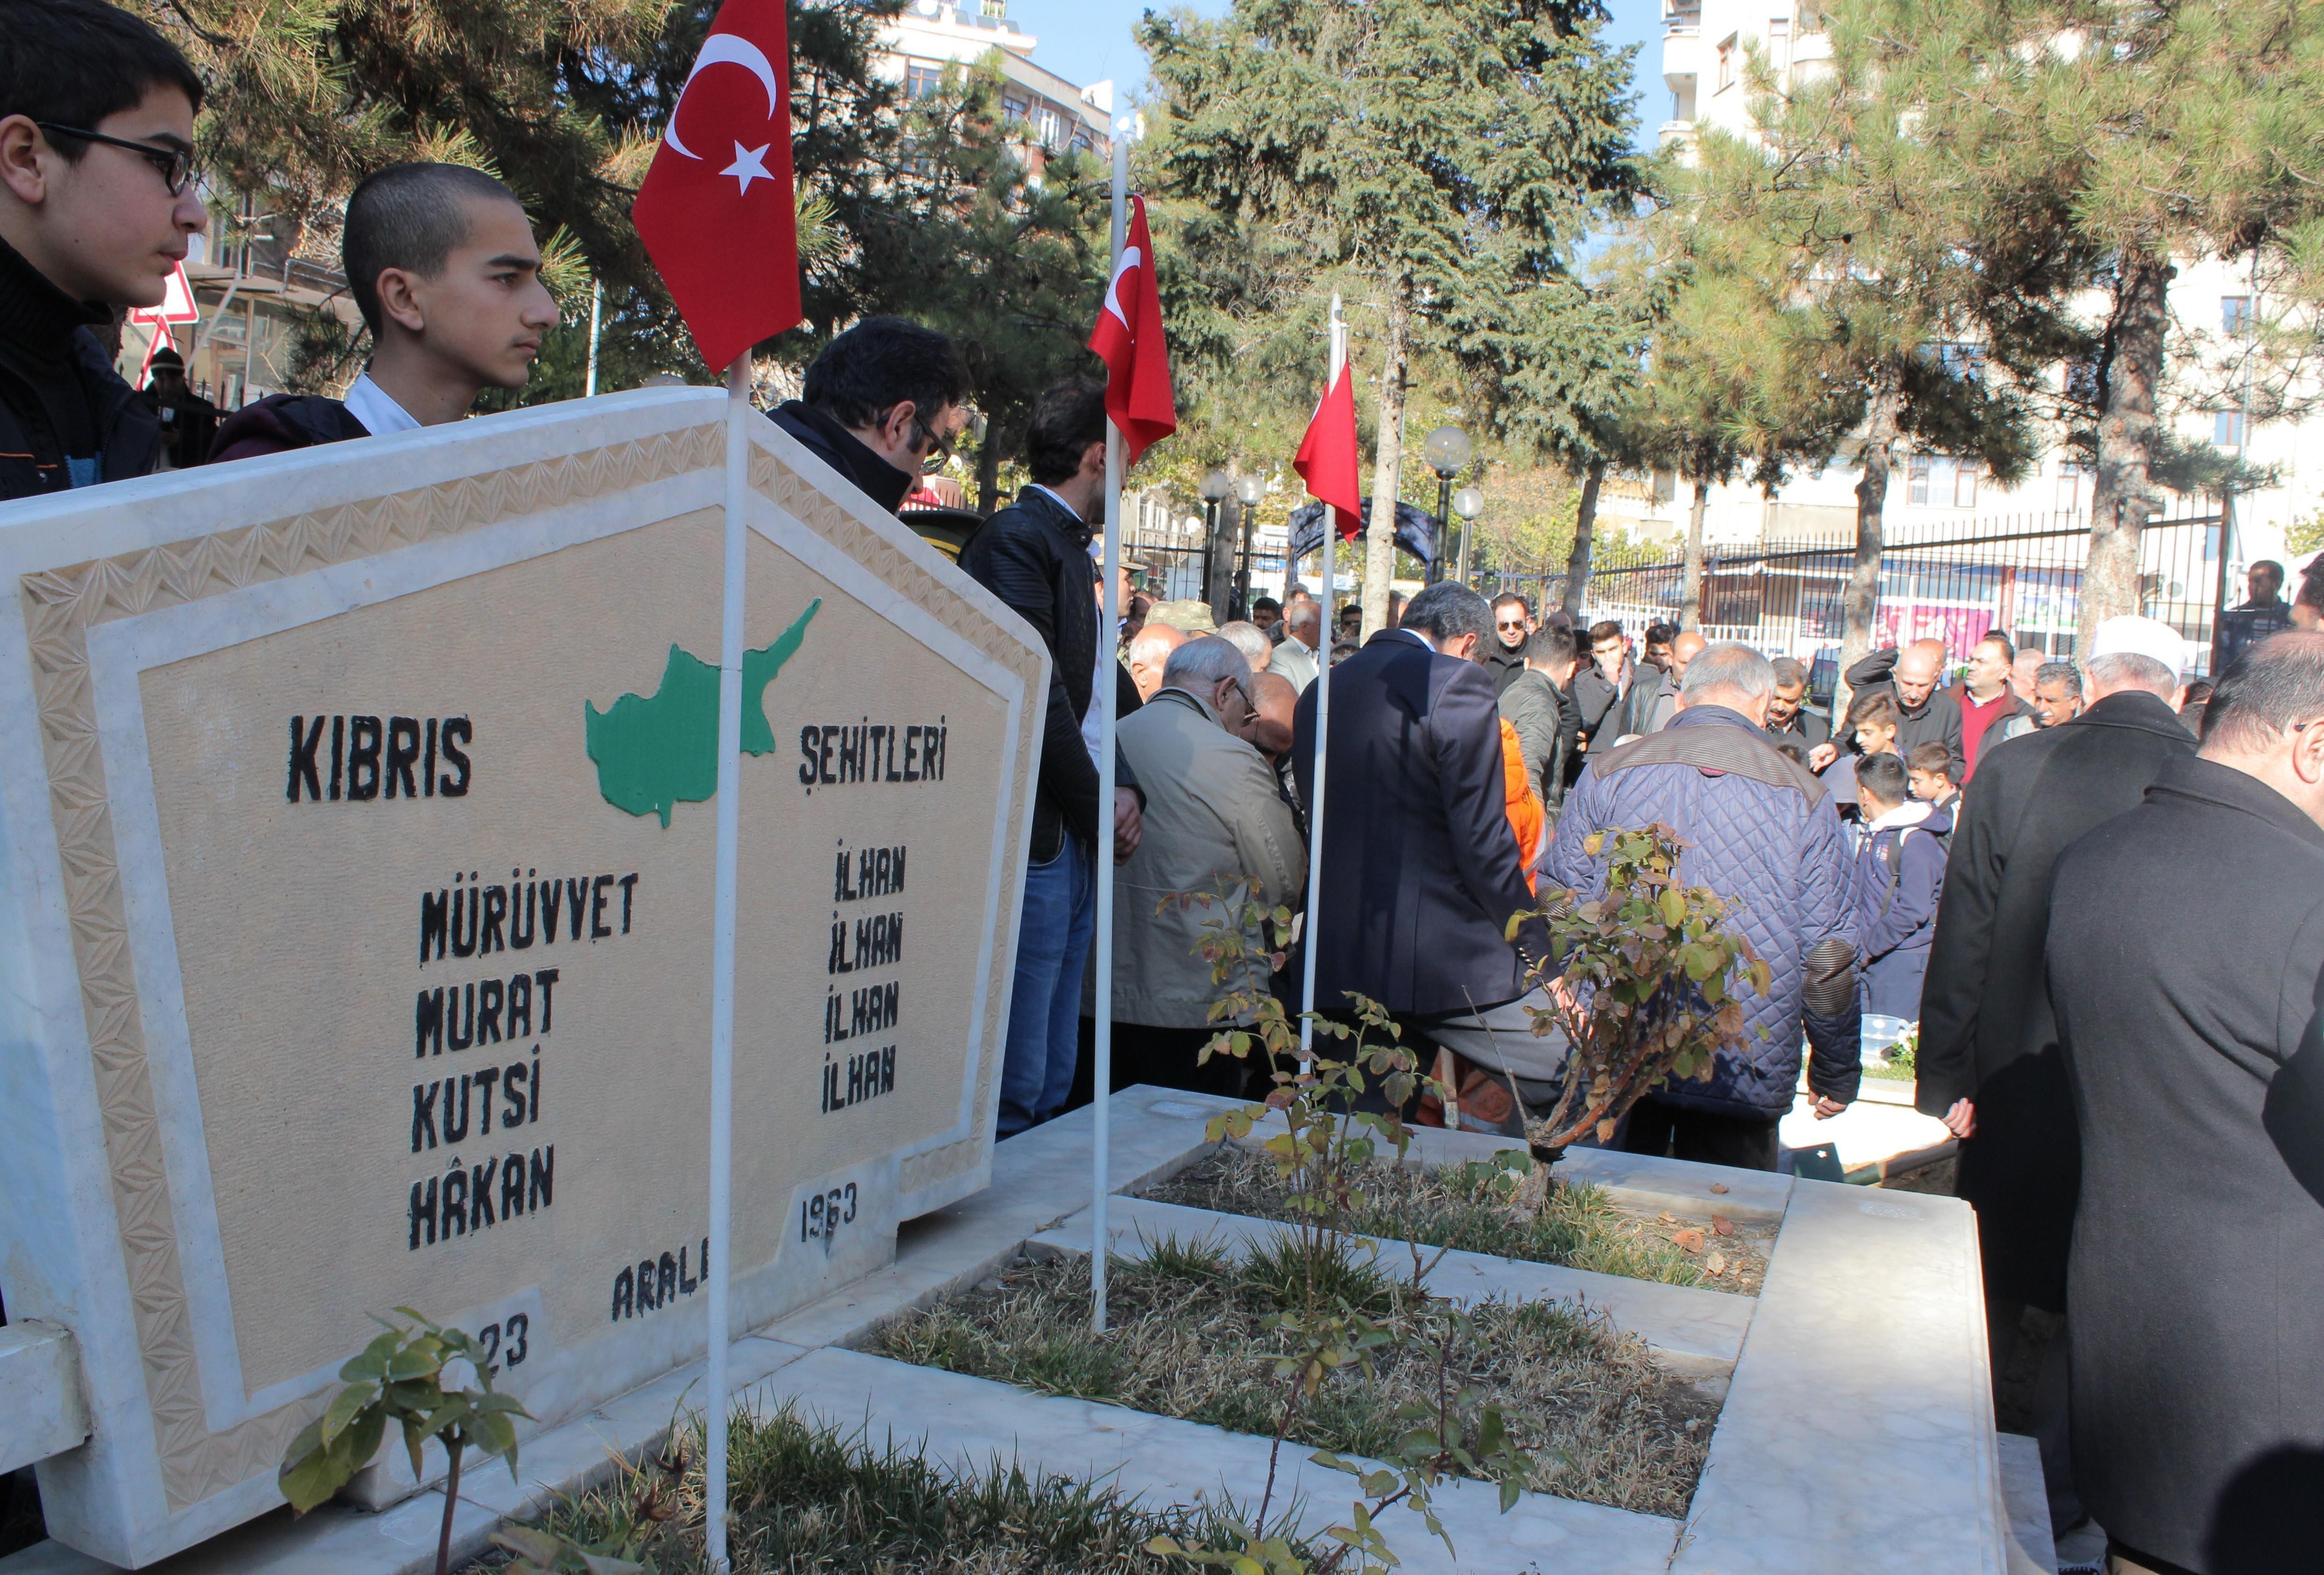 Necmi İlhandan Türk Mukavemet Teşkilatı (TMT) tepkisi Üç kardeşini terör örgütü şehit etti